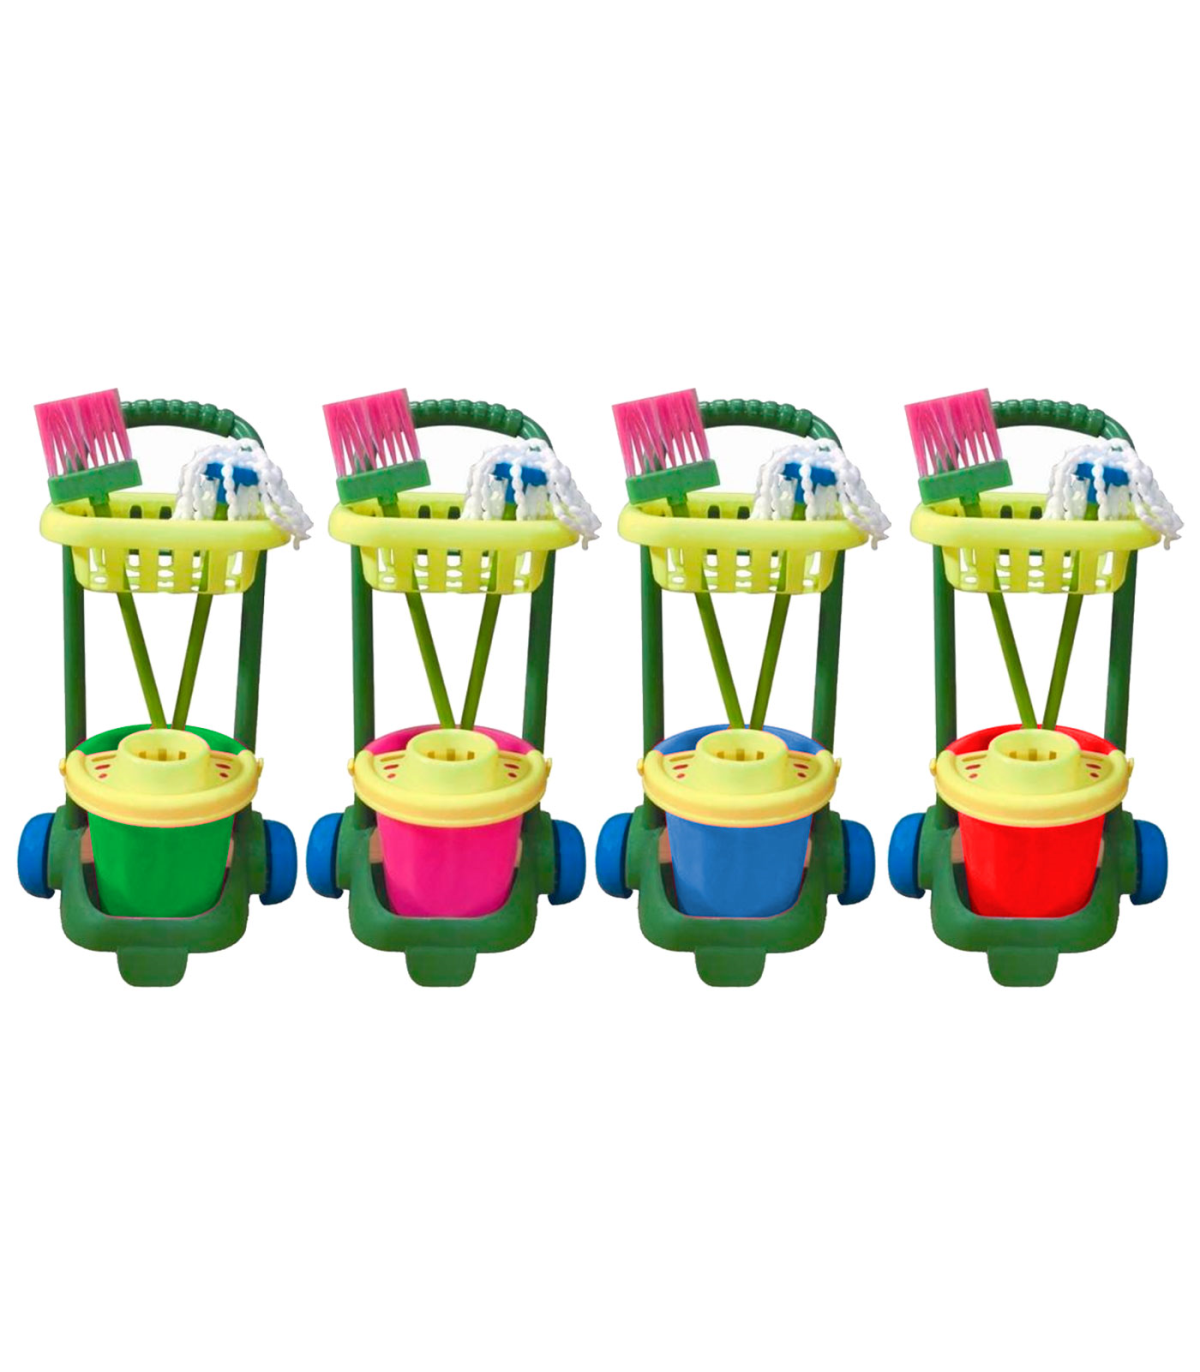 Kit de limpieza de juguete con 4 utensilios, plástico resistente, cubo,  fregona, escoba y recogedor, barrer, fregar